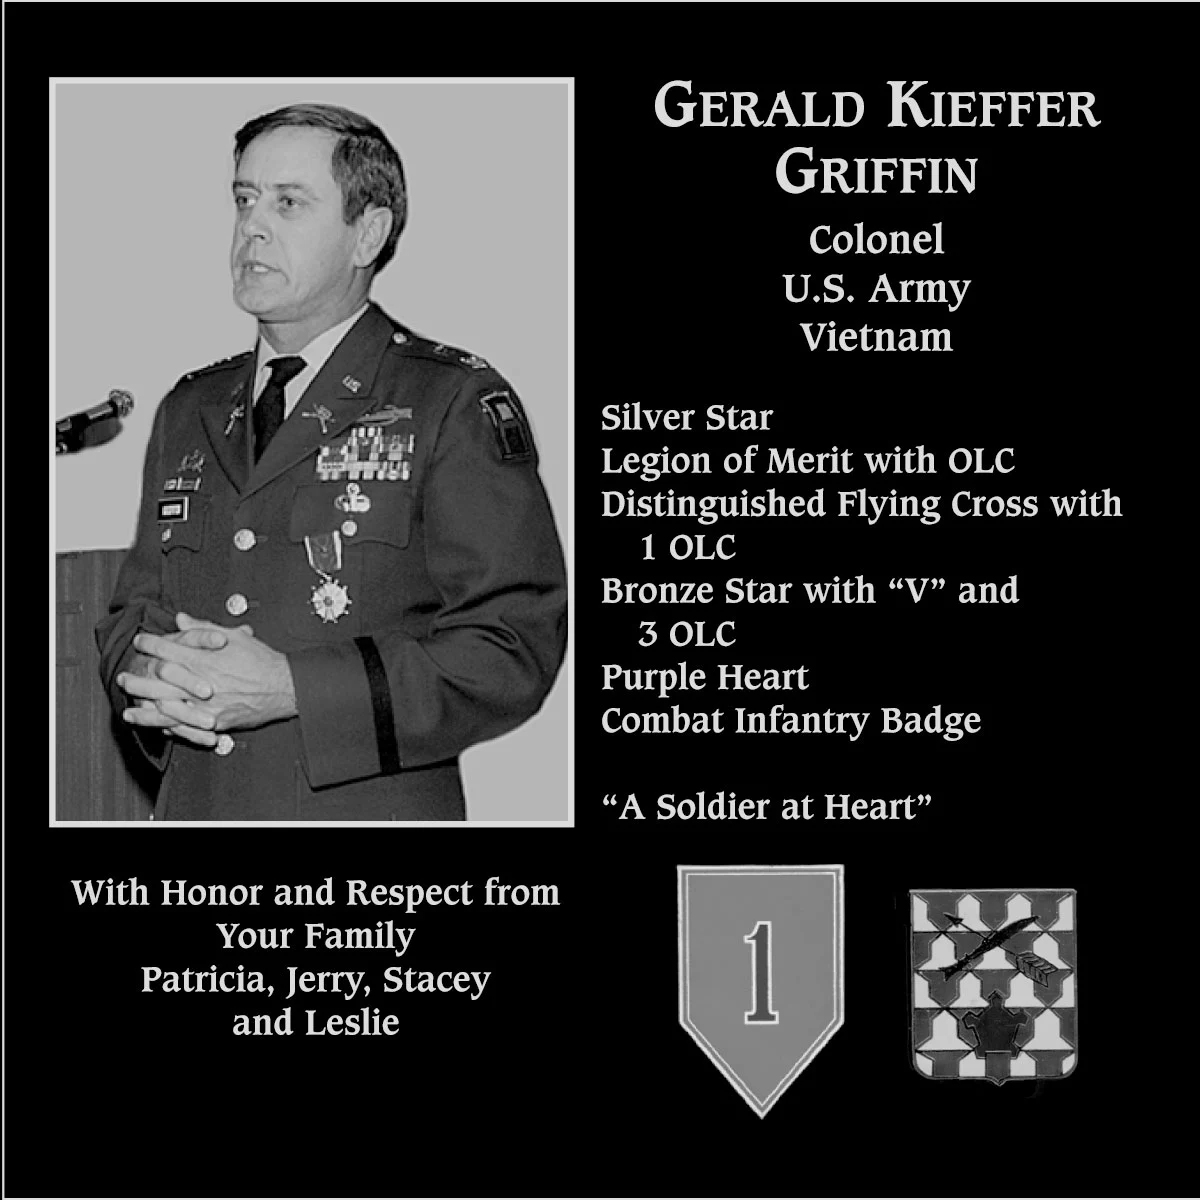 Gerald Kieffer Griffin